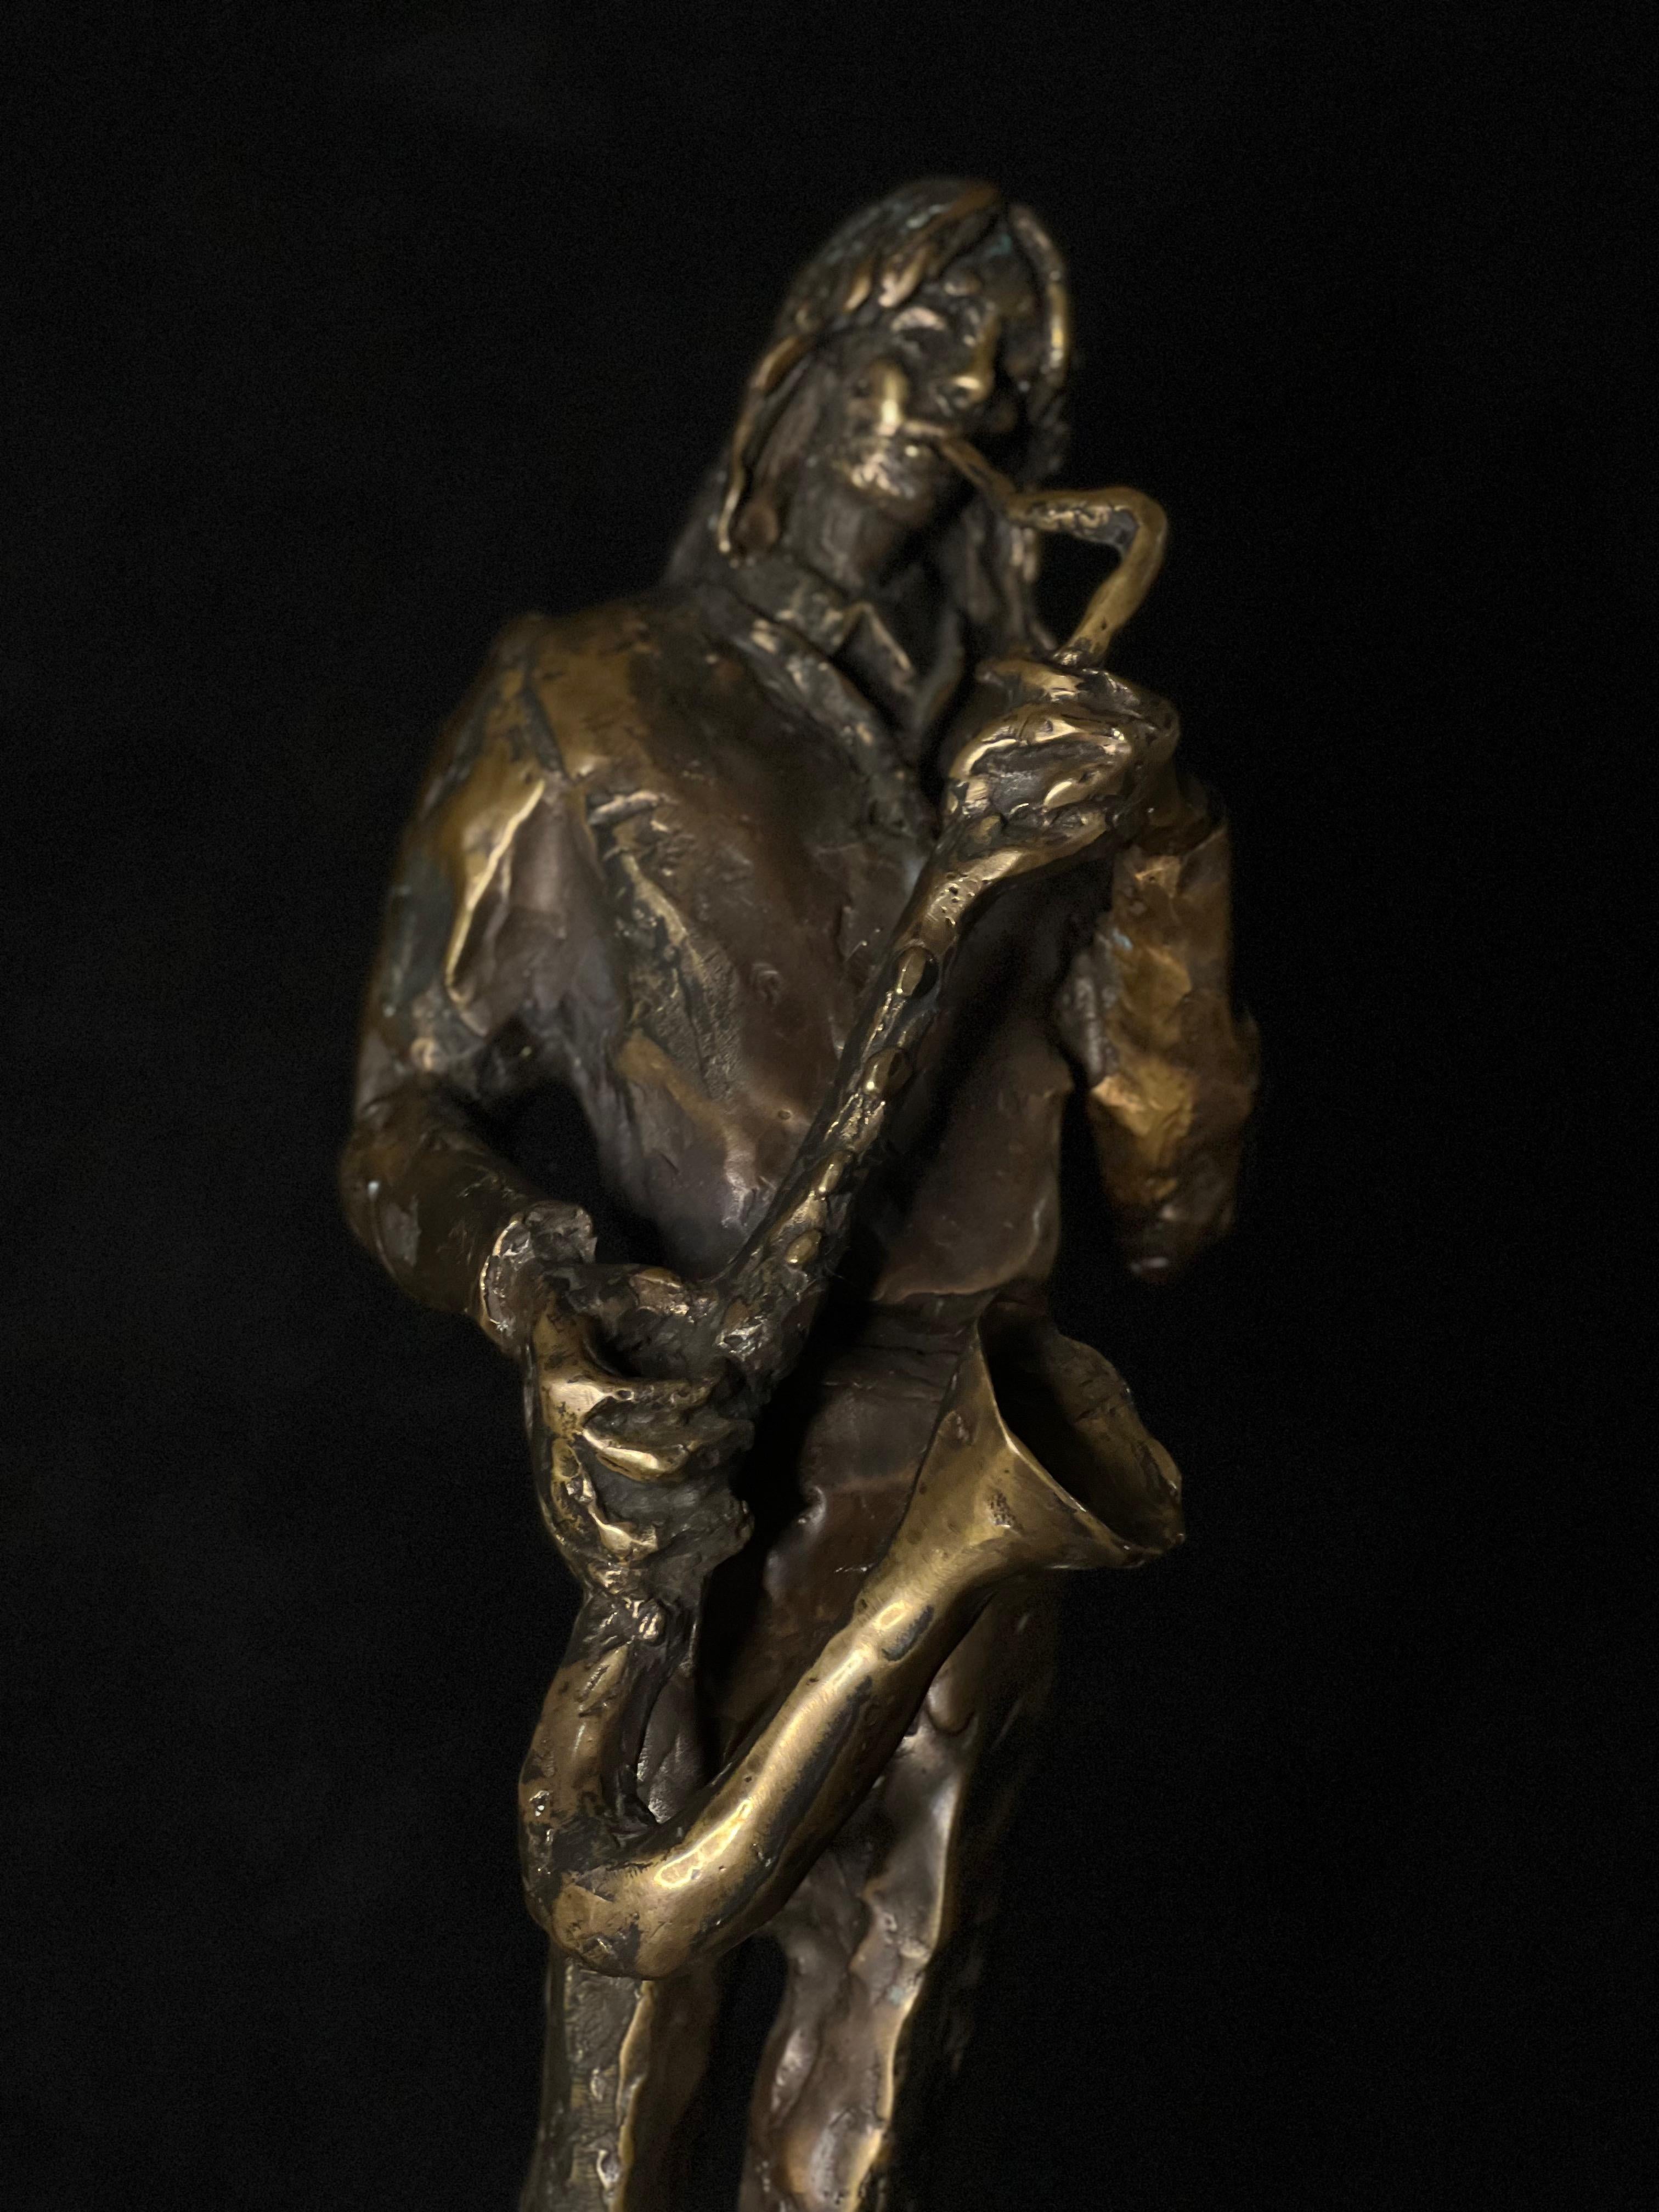 L'homme Saxe - la sculpture en bronze du saxophoniste - Sculpture de Tauno Kangro